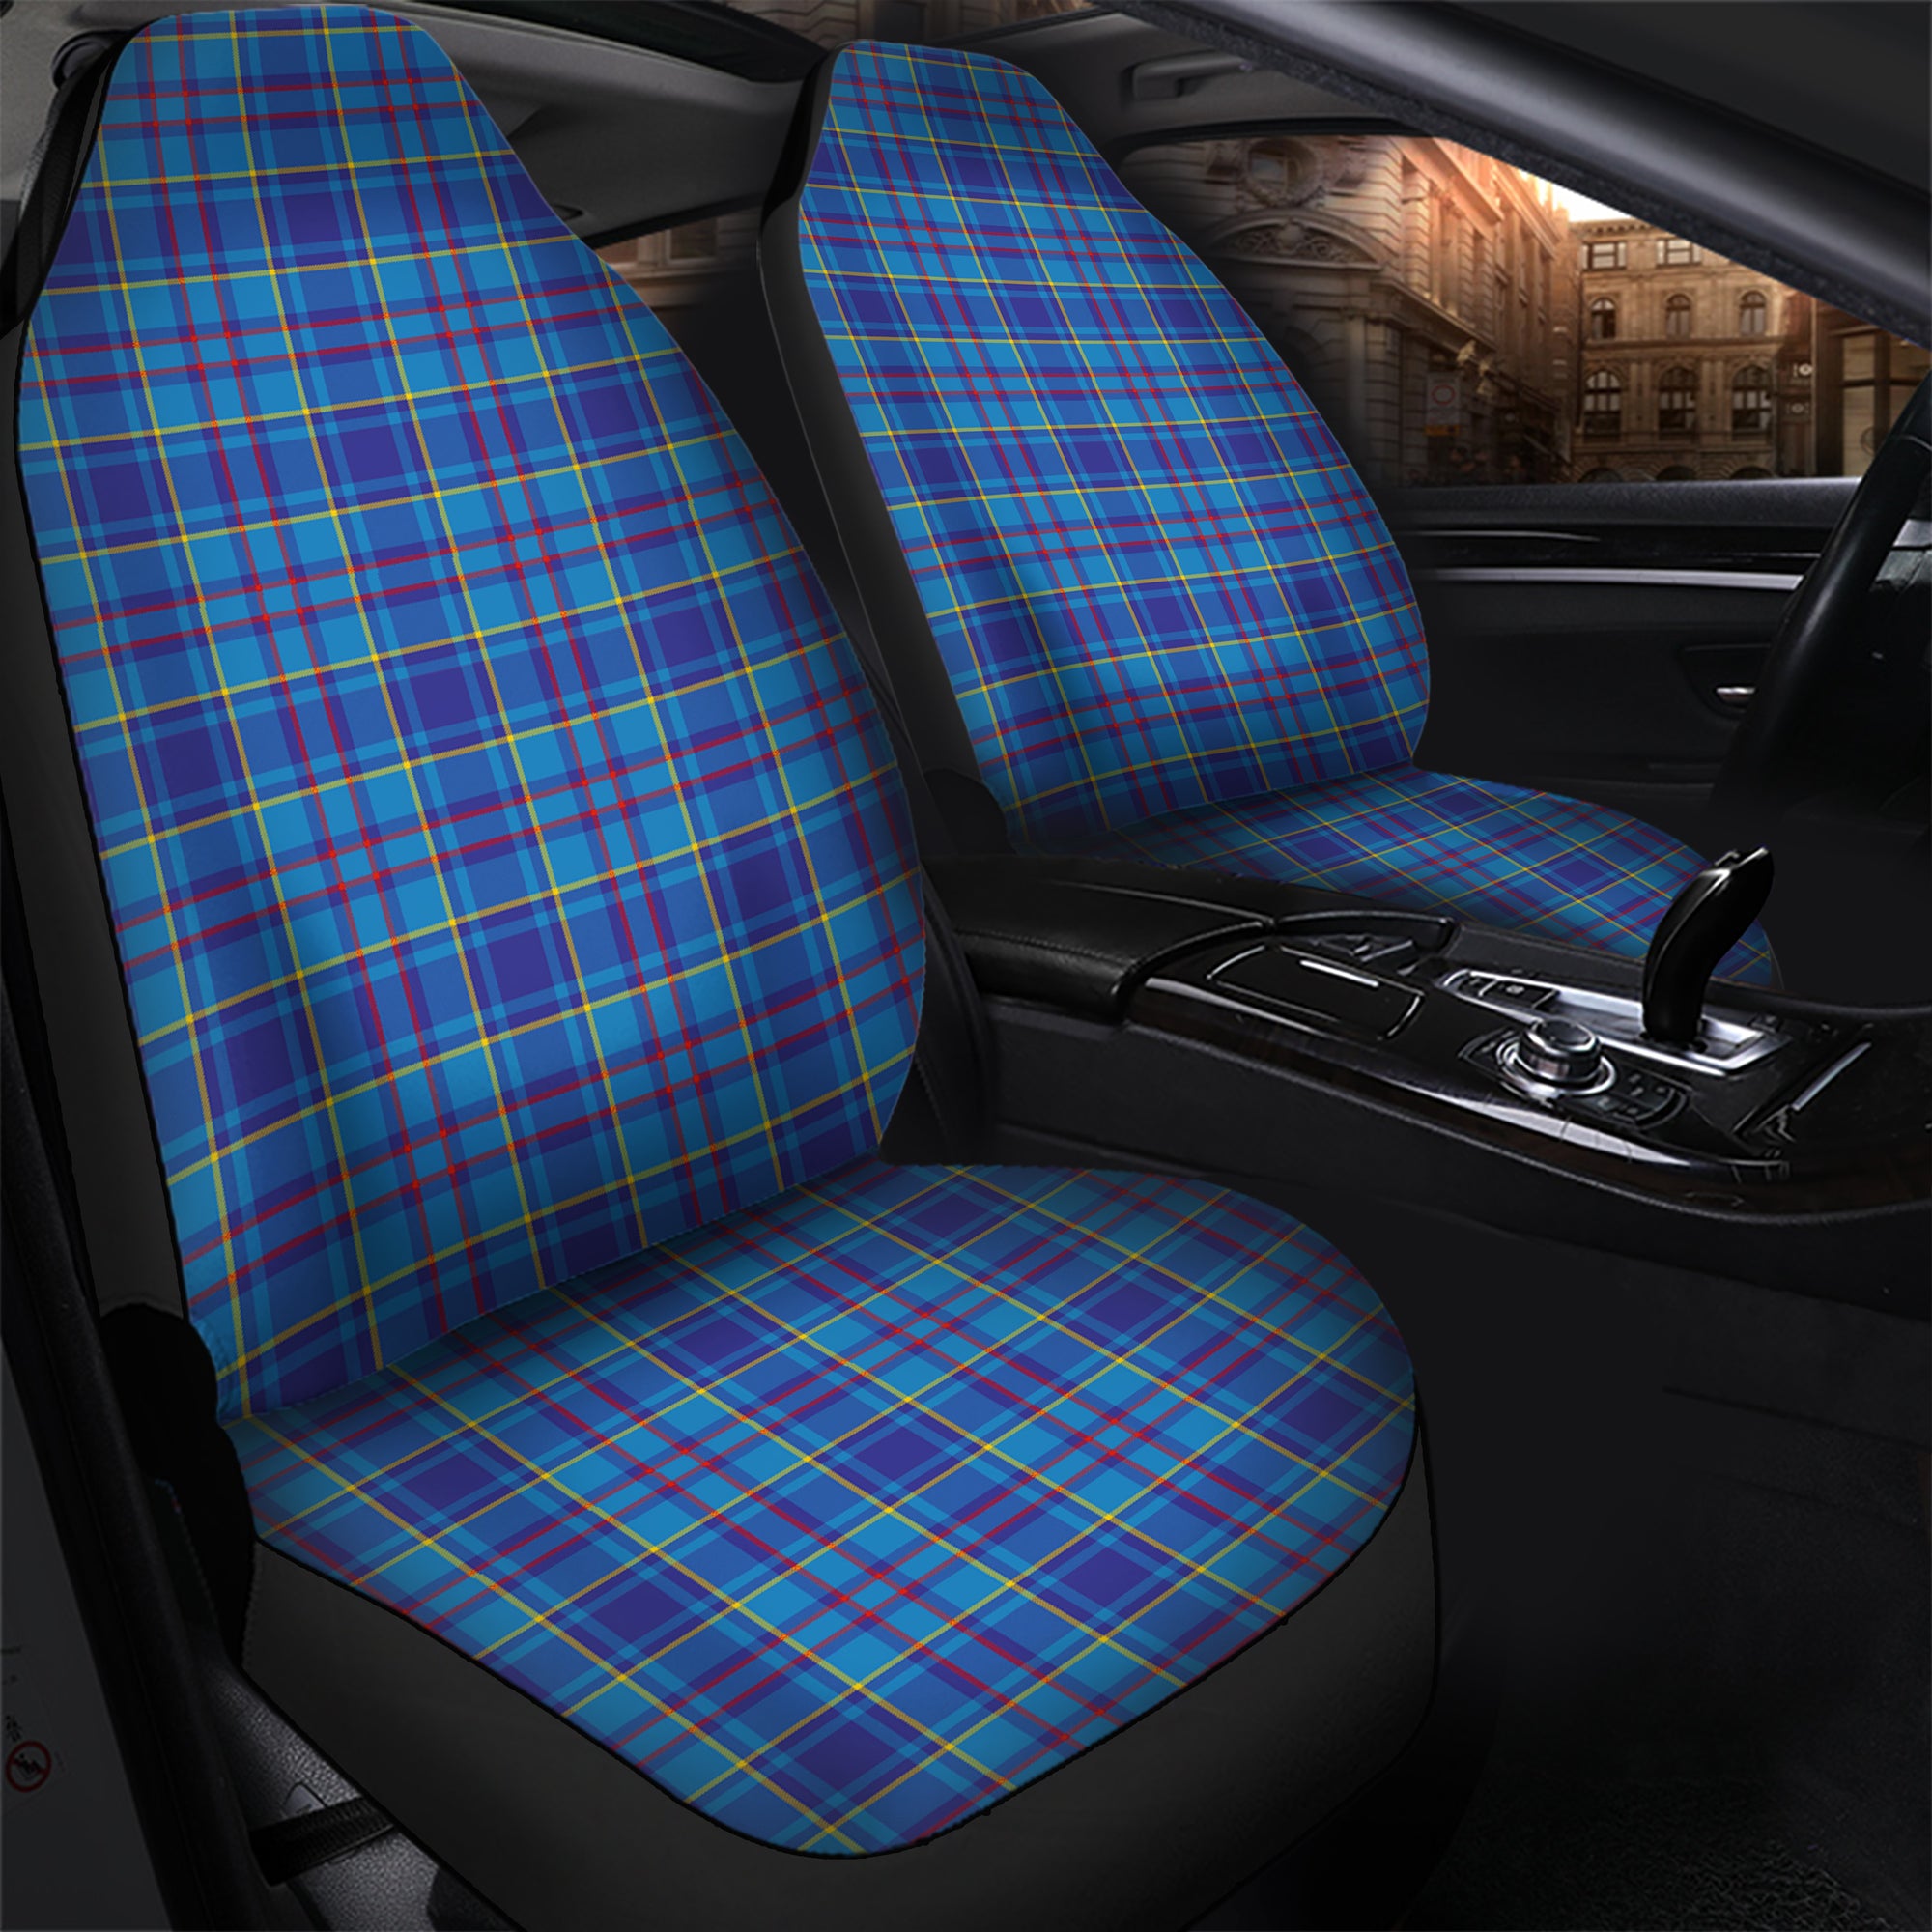 scottish-mercer-modern-clan-tartan-car-seat-cover